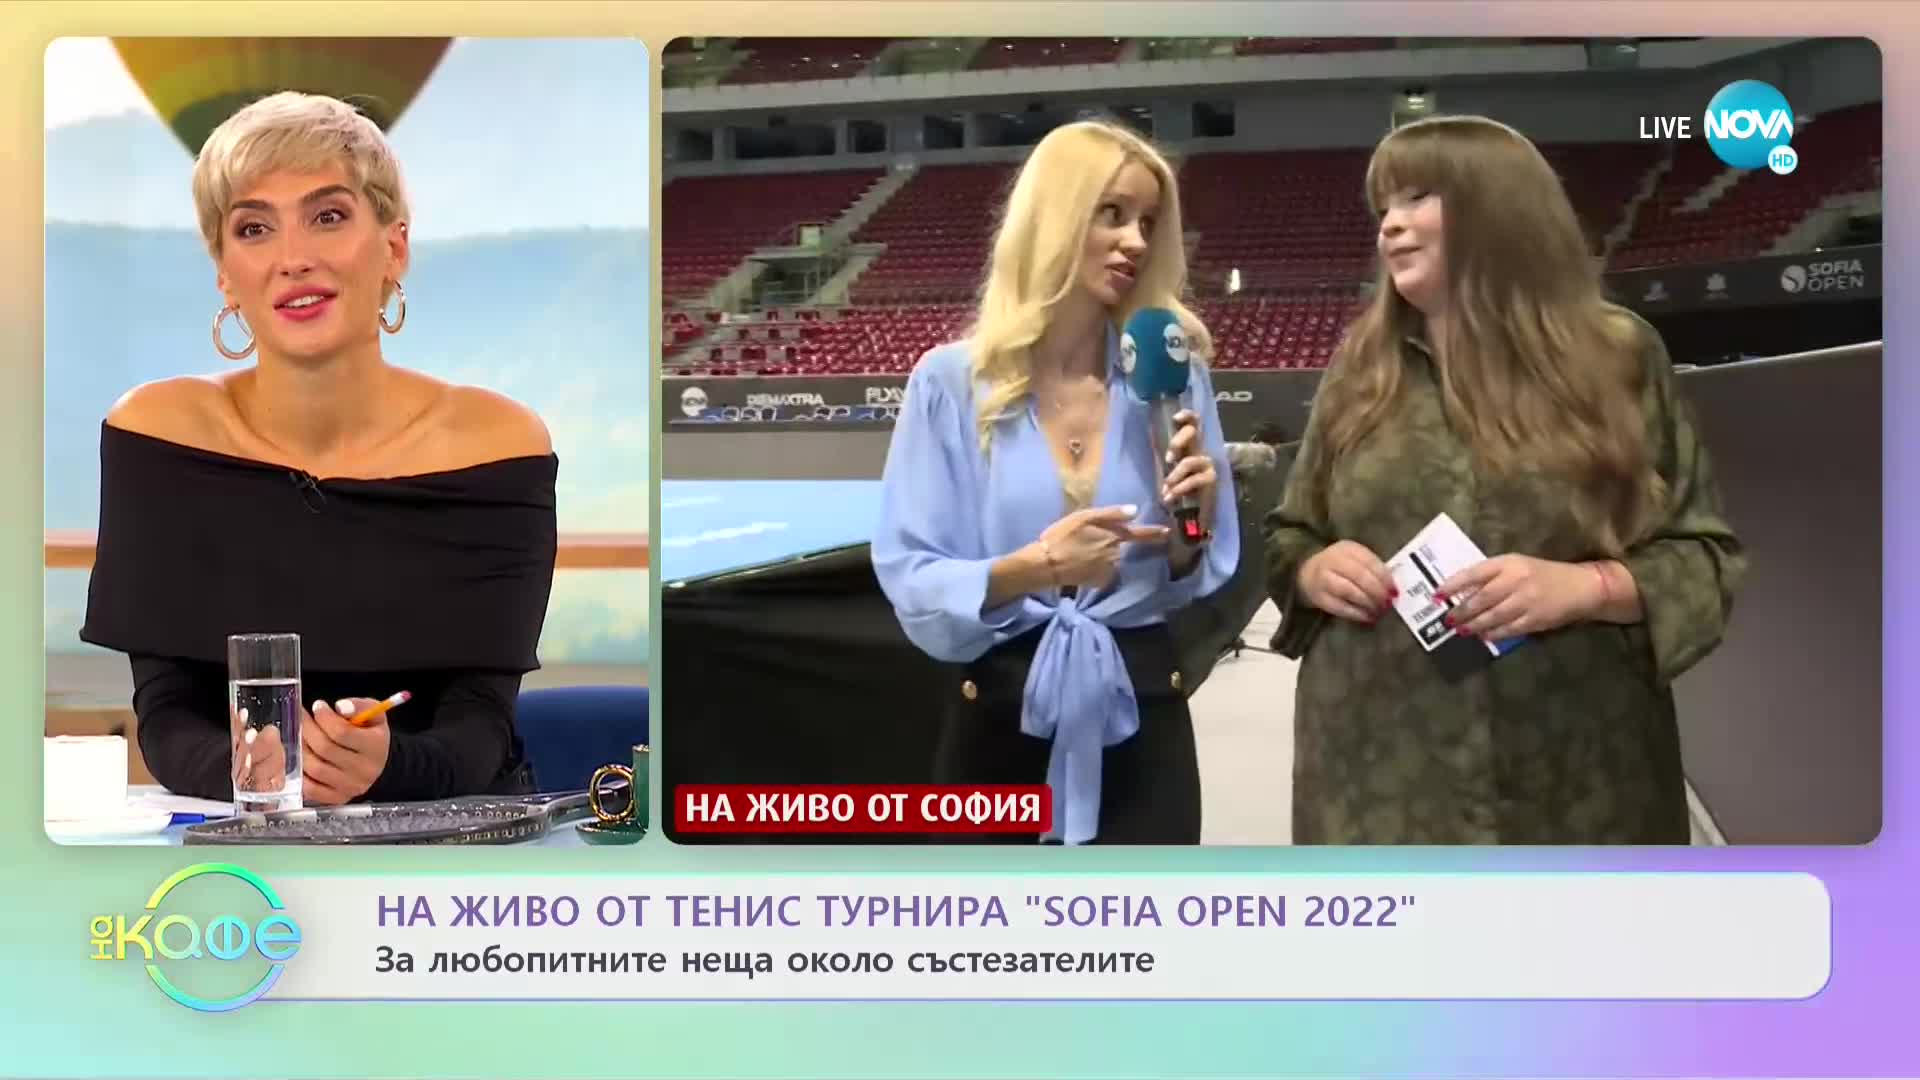 За любопитните неща около участниците в "Sofia Open 2022" - „На кафе” (28.09.2022)